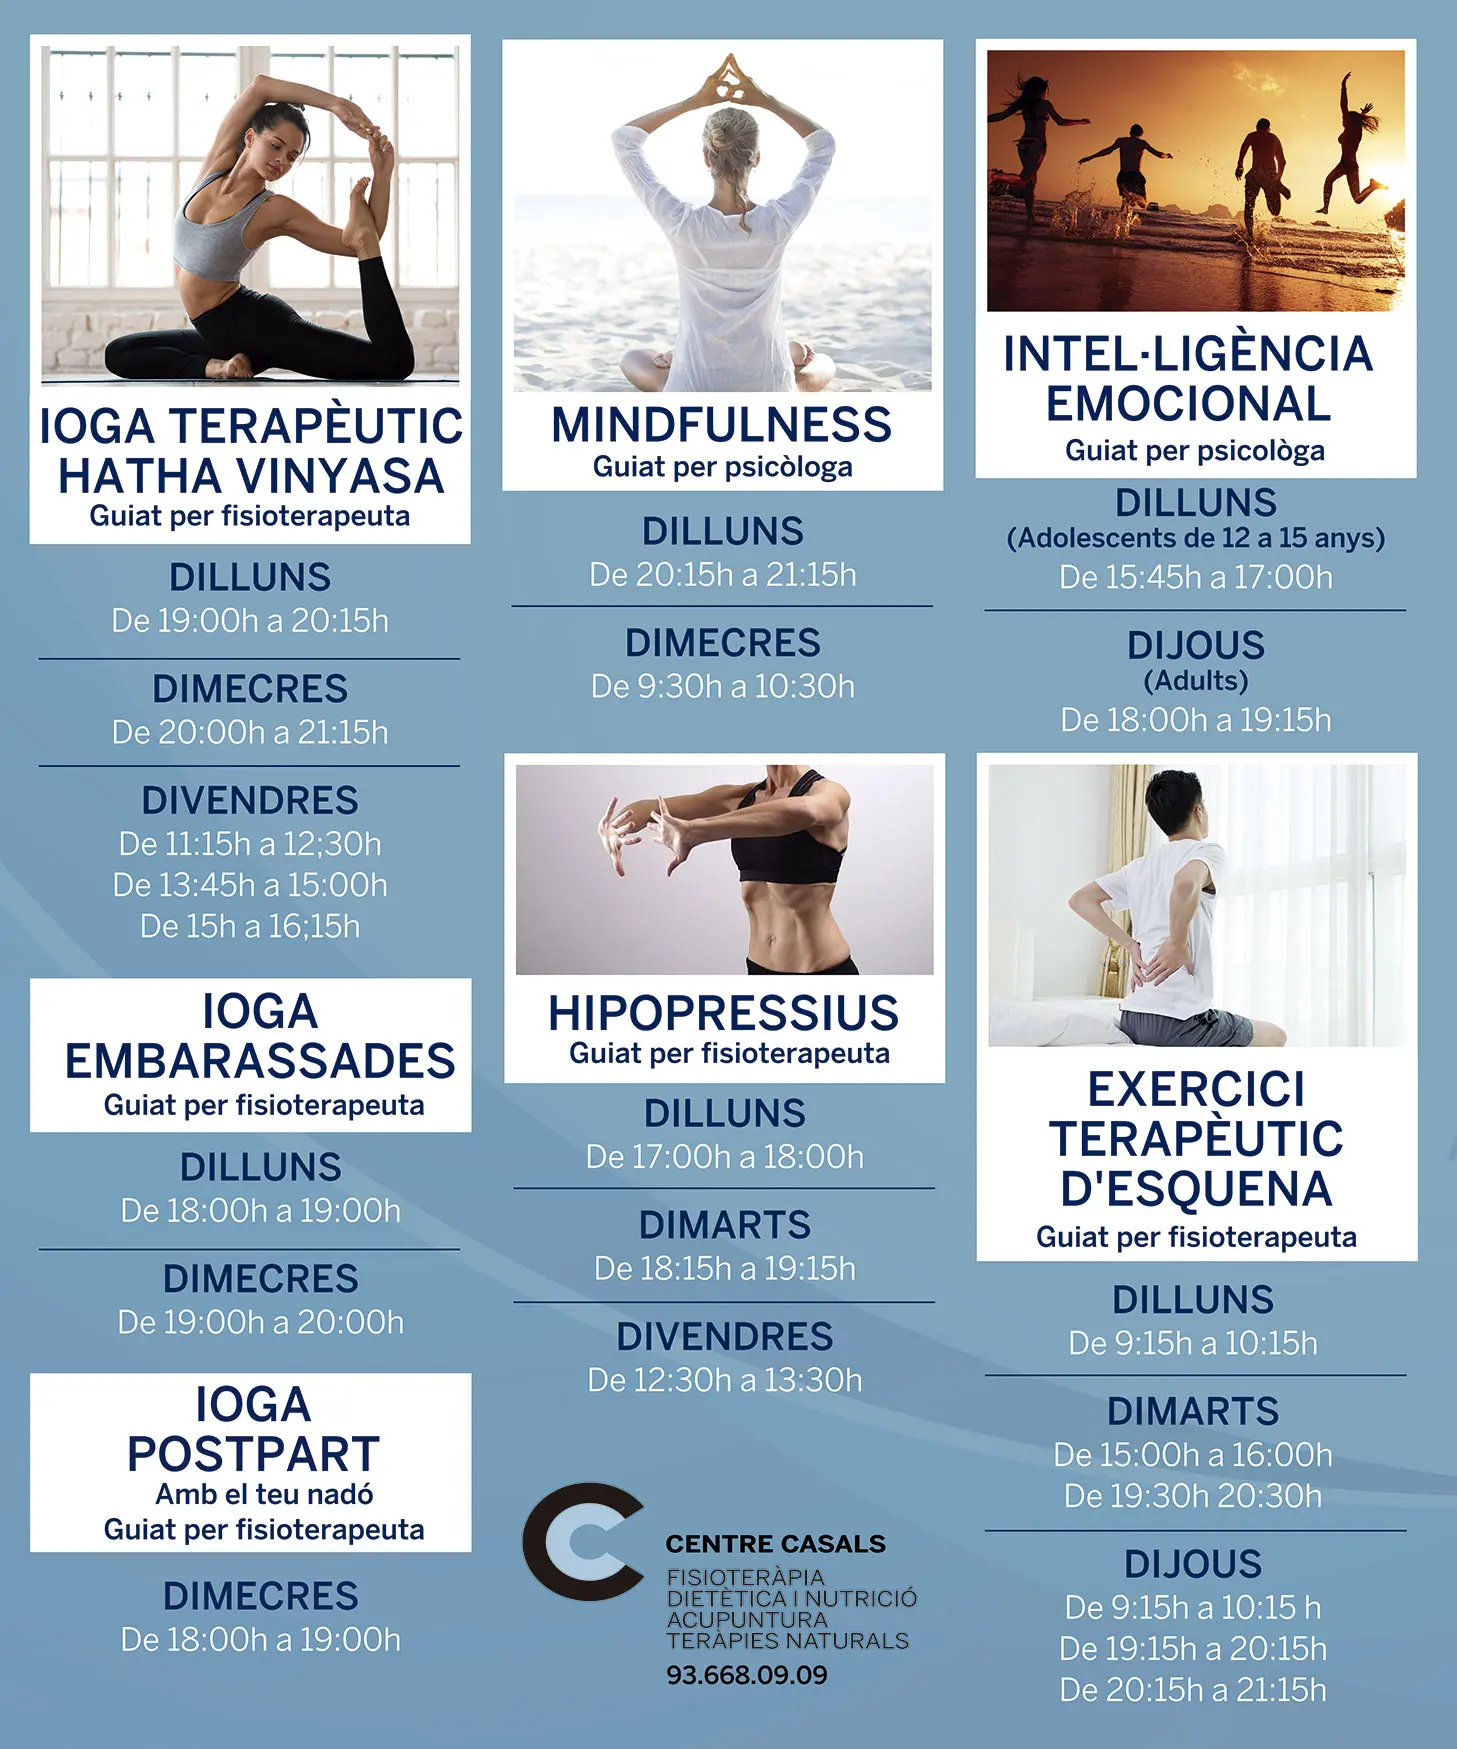 yoga terapeutico beneficios - Qué es el Hatha Yoga terapeutico